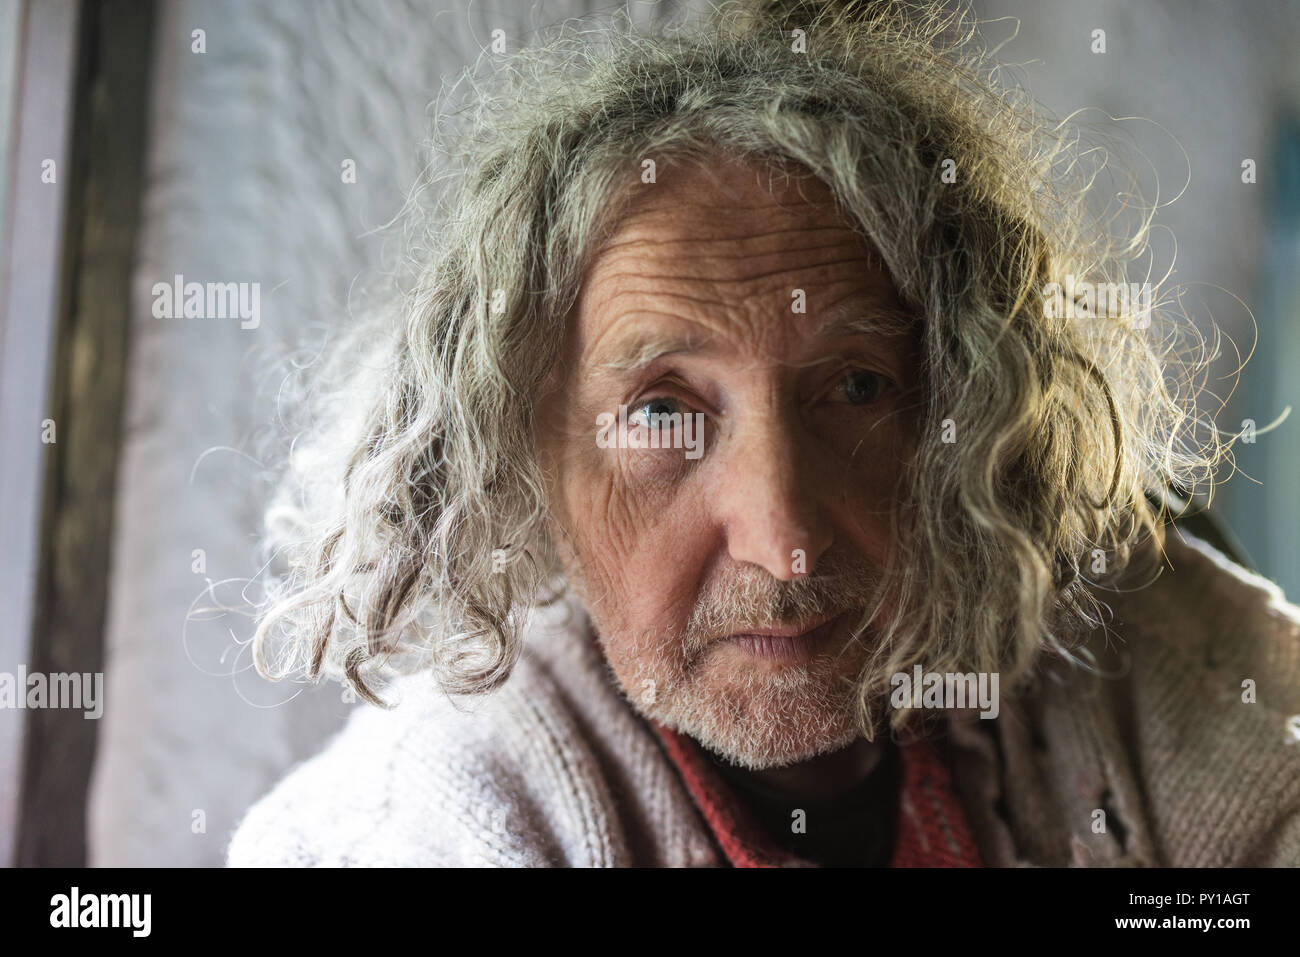 Portrat Der Alten Mann Mit Ungepflegten Langes Graues Haar Und Stroh Traurig Stockfotografie Alamy